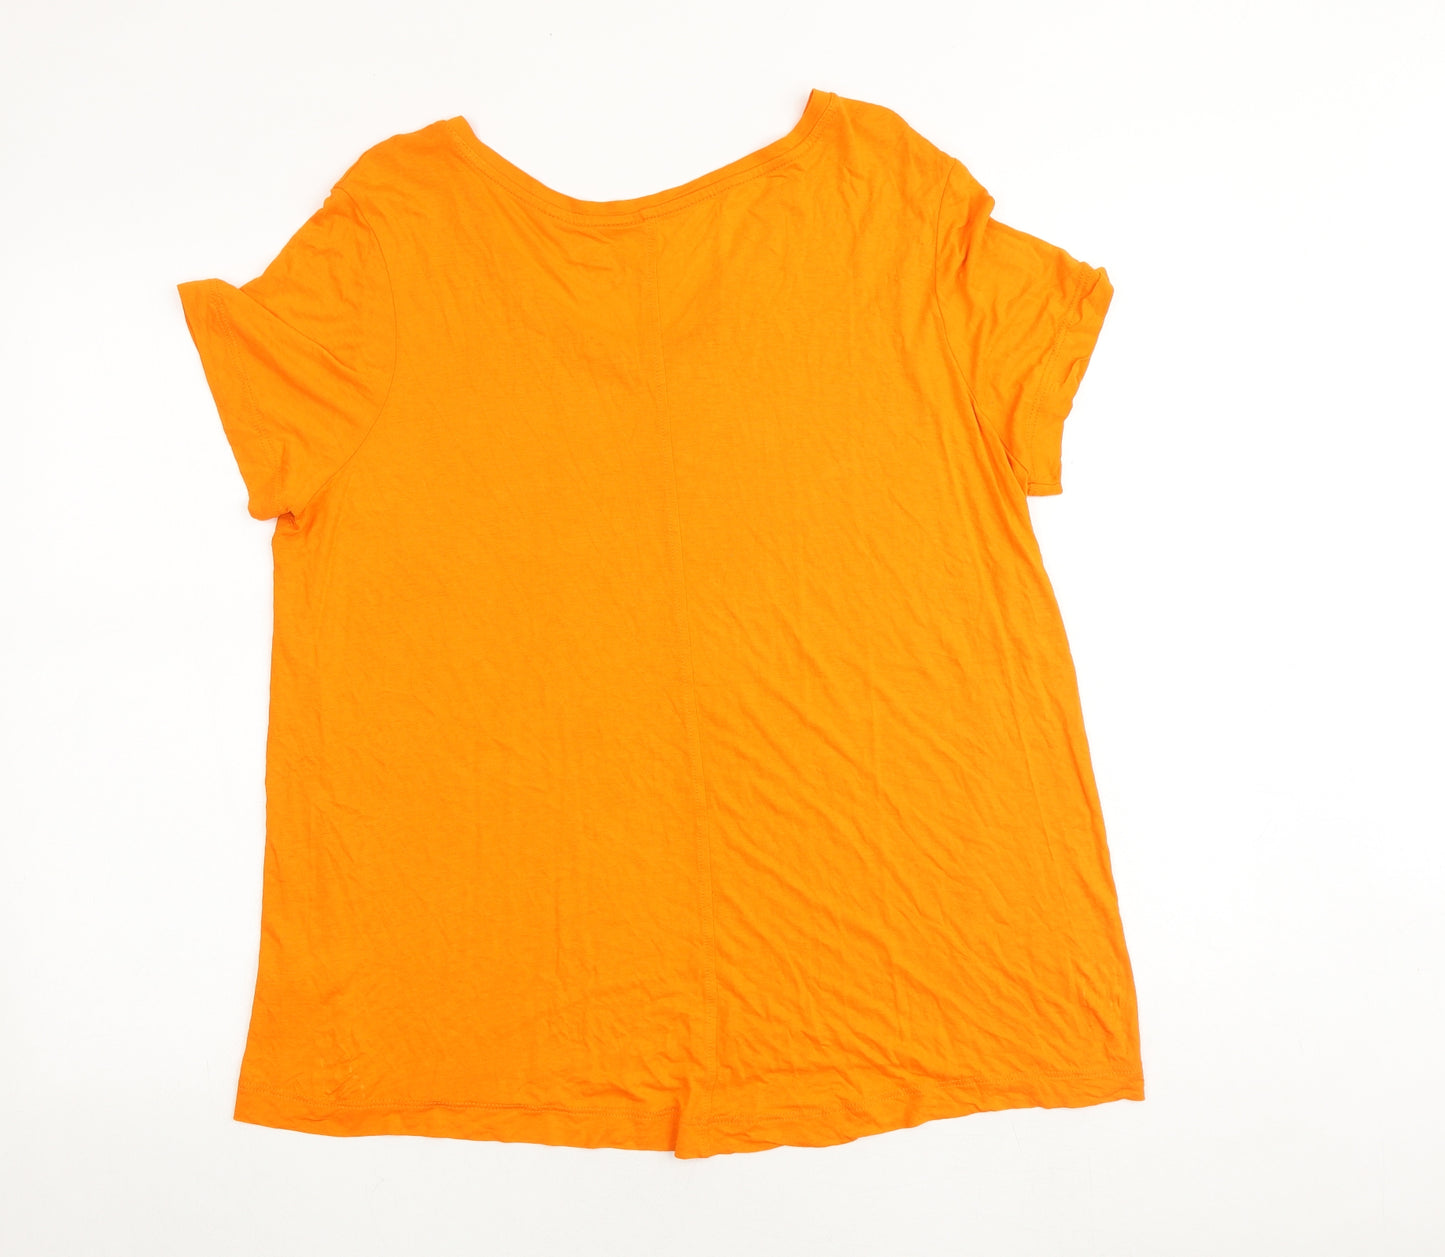 NEXT Womens Orange Viscose Basic T-Shirt Size 18 Boat Neck